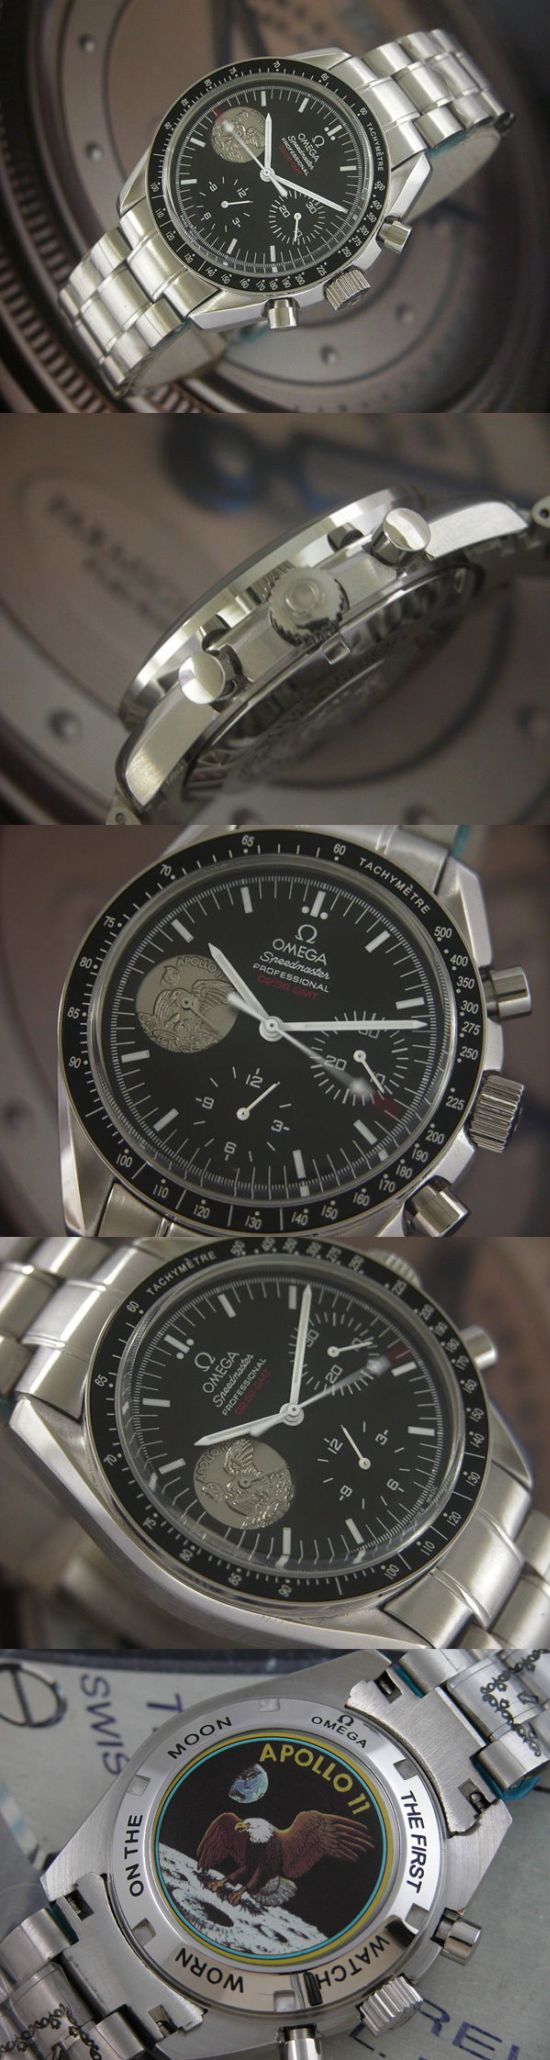 おしゃれなブランド時計がオメガ-スピードマスター-OMEGA-311.30.42.30.01.002-男性用を提供します.